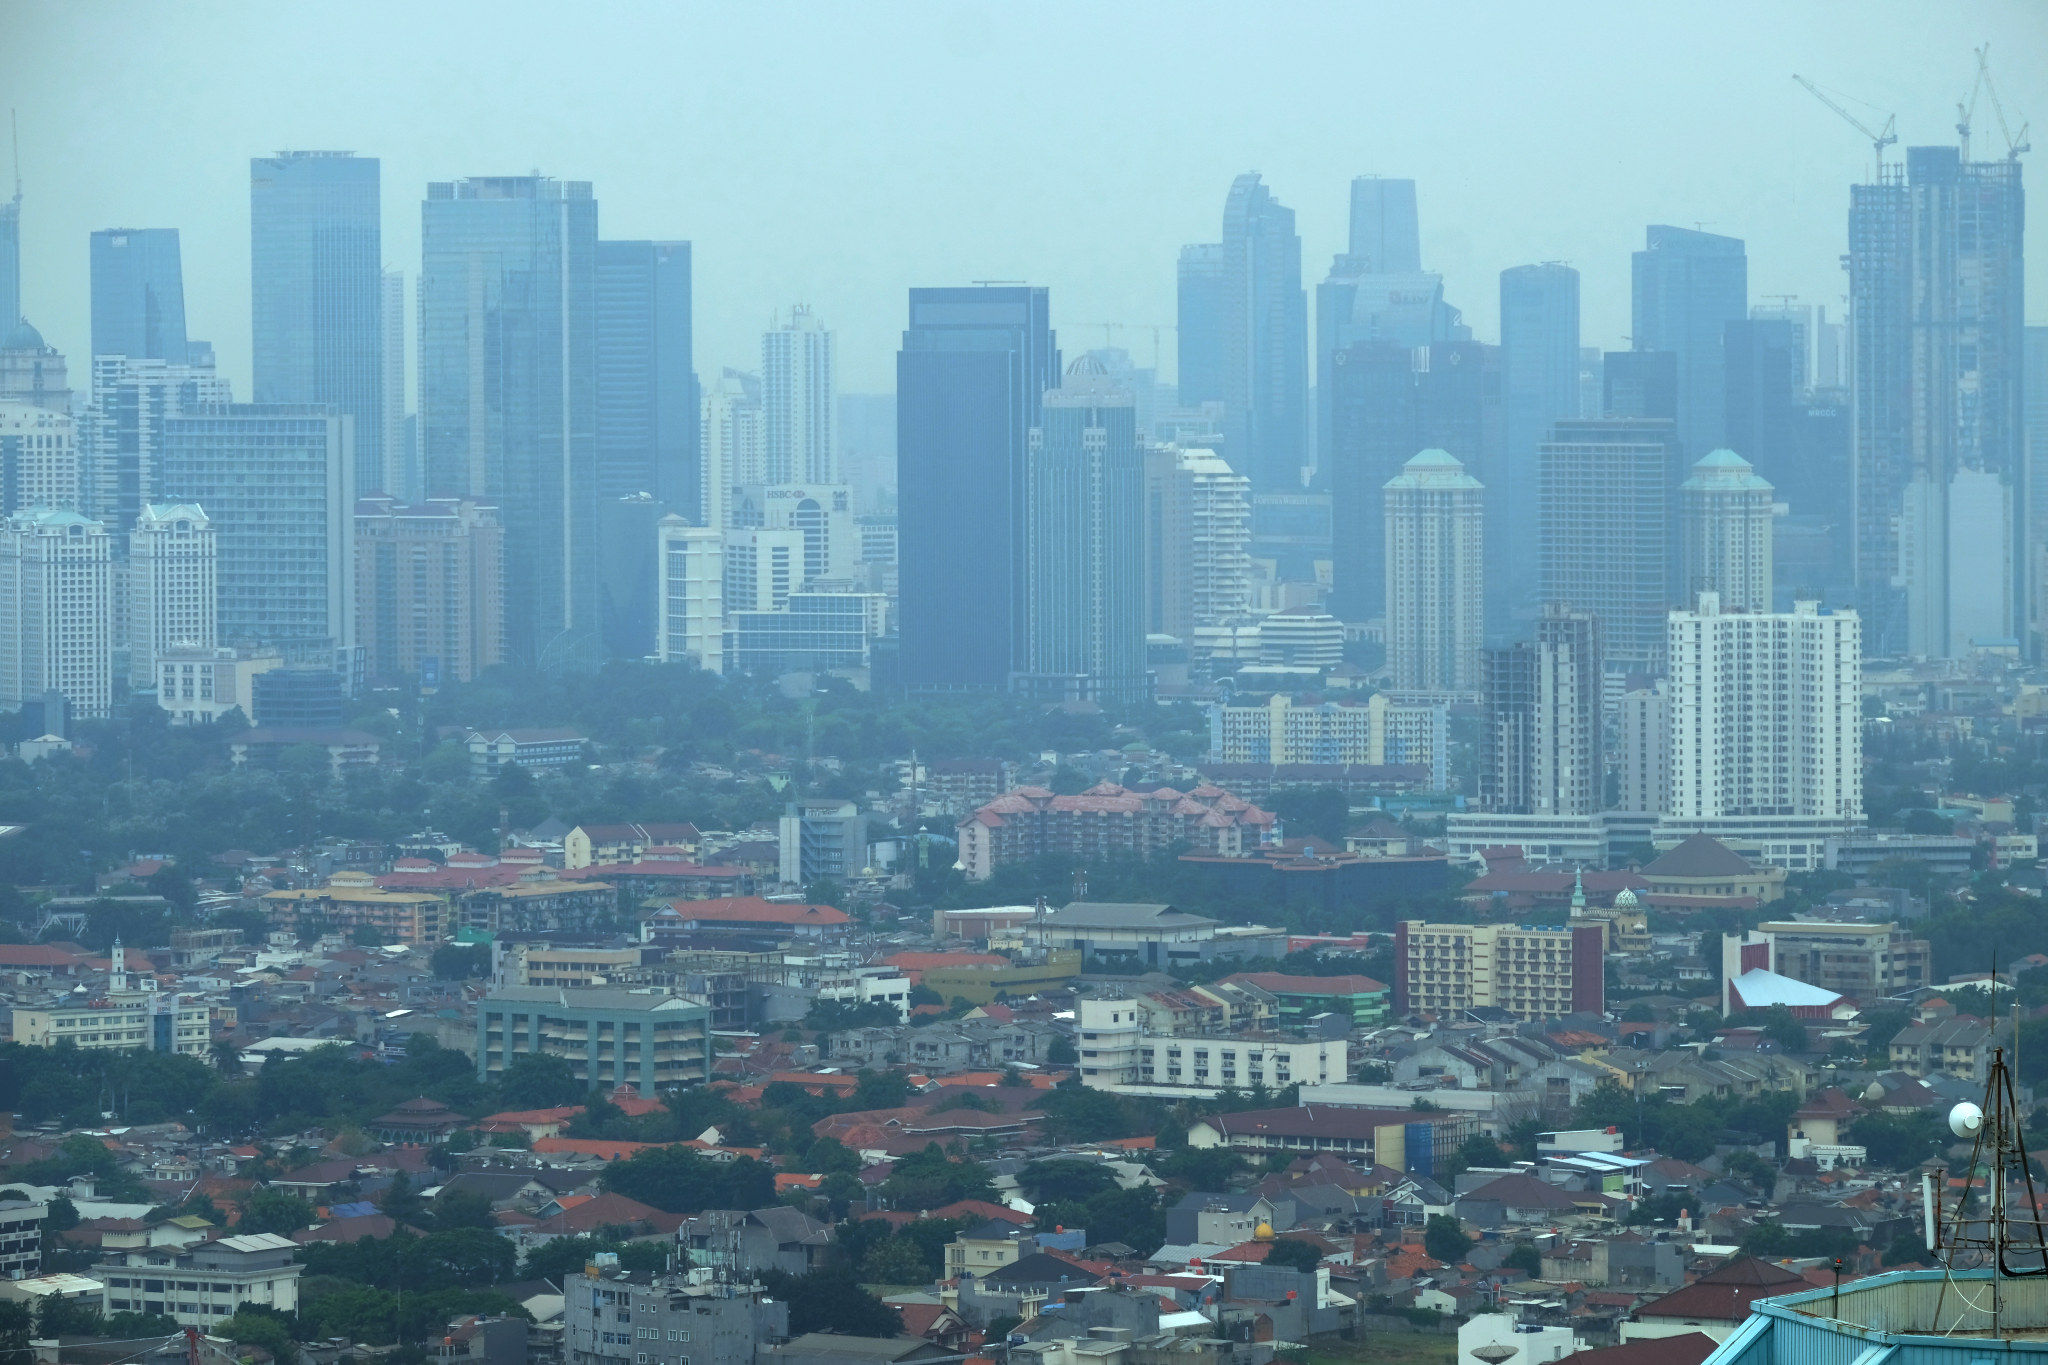 <p>Lanskap pemukiman dan gedung pencakar langit diambil dari kawasan Grogol, Jakarta, Kamis, 5 November 2020. Foto: Ismail Pohan/TrenAsia</p>
